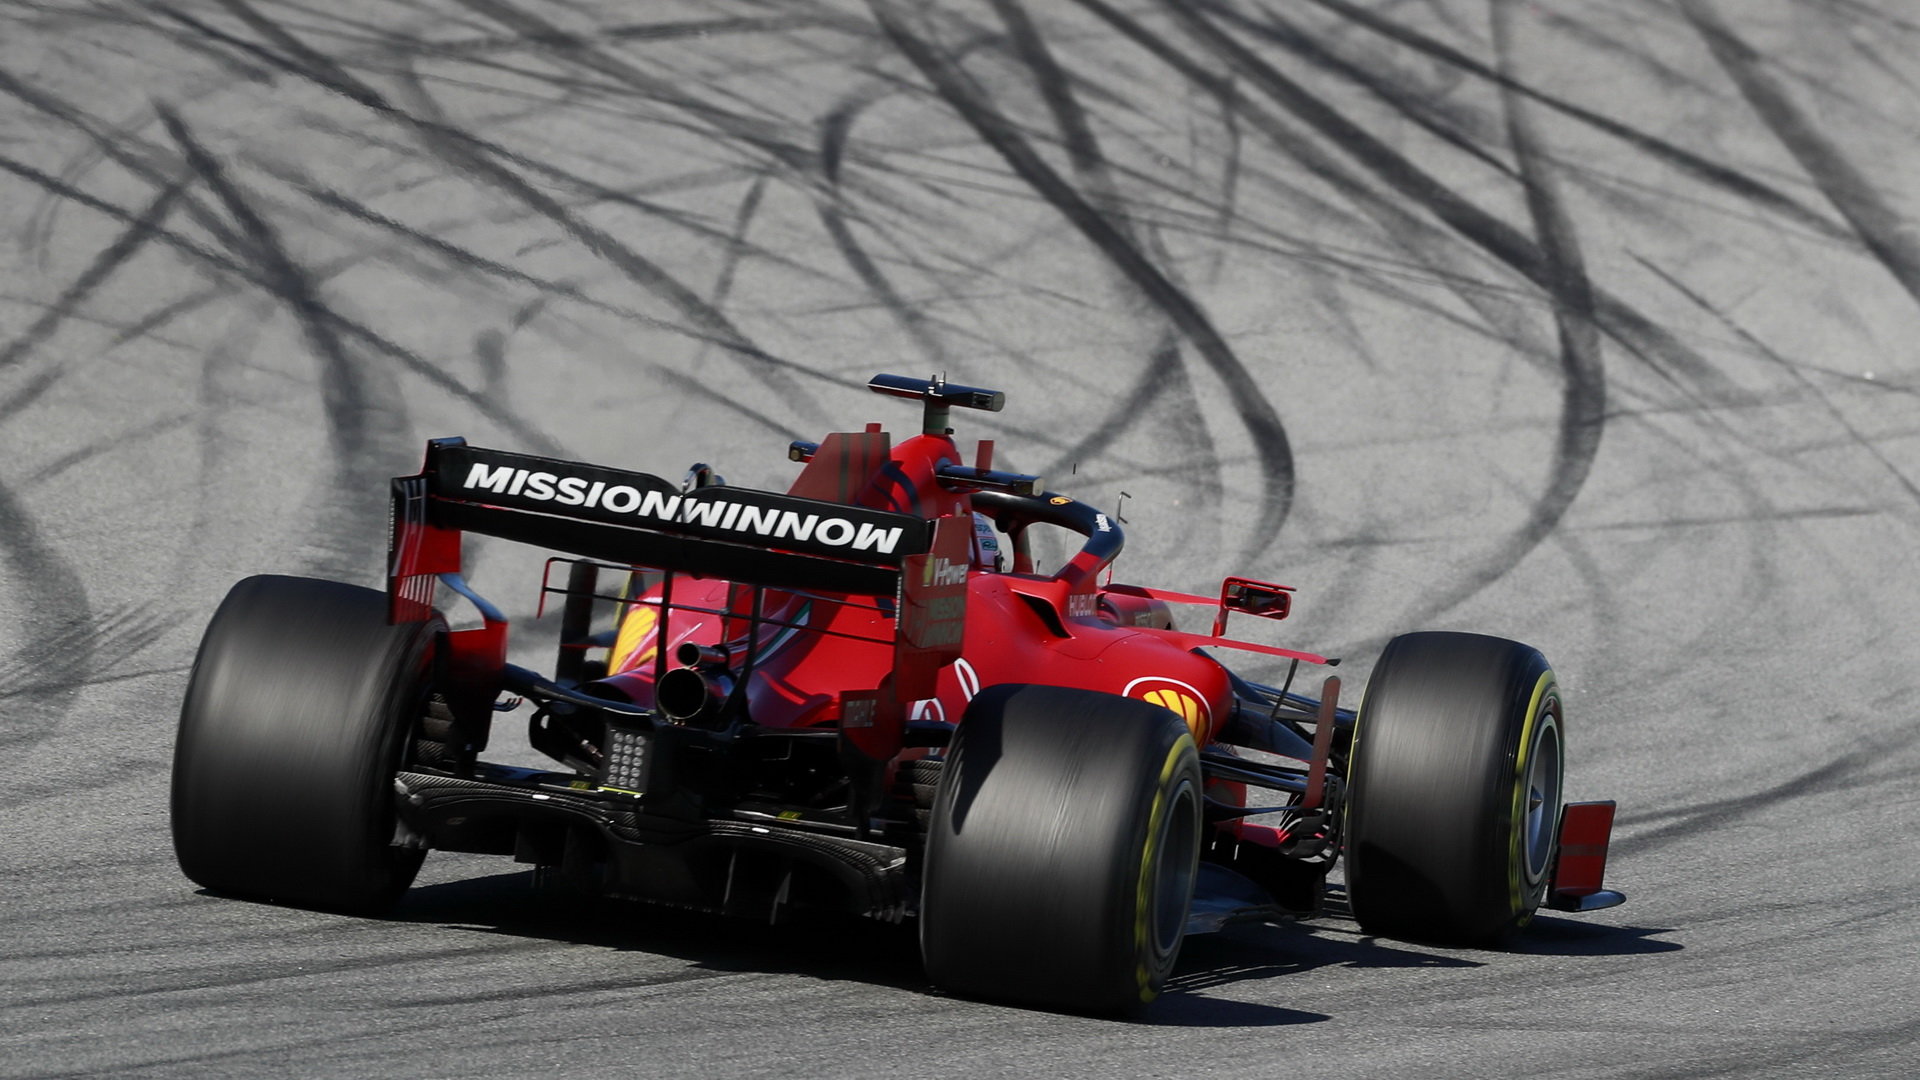 Všechny vozy poháněné motorem Ferrari jsou podle Magnussena na rovinkách letos pomalejší